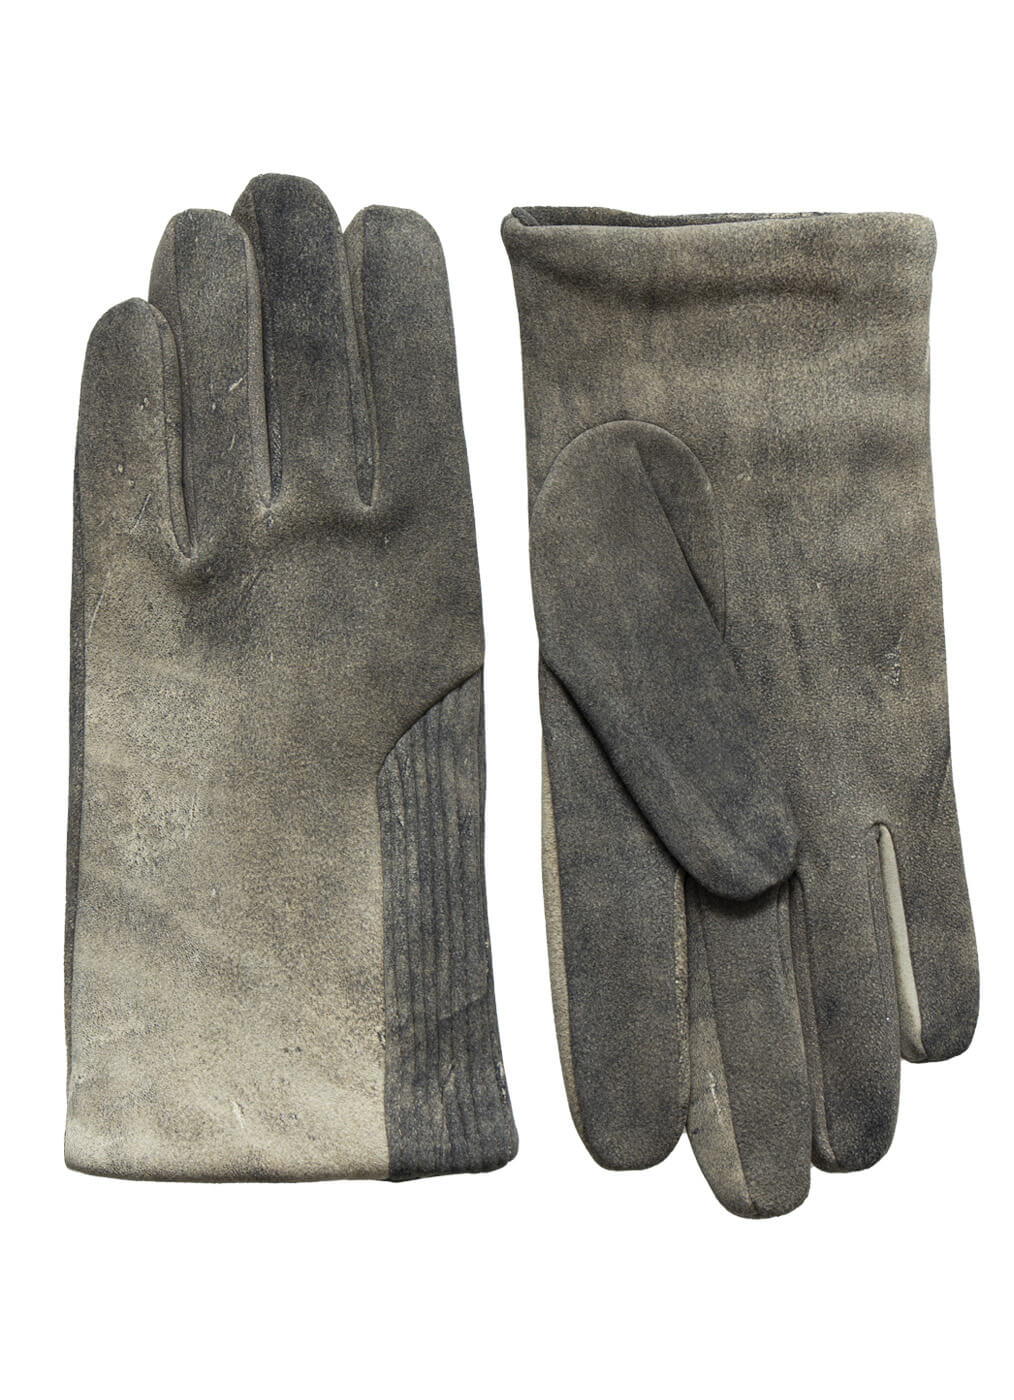 Deer Leather Glove “Goodwood”, old black